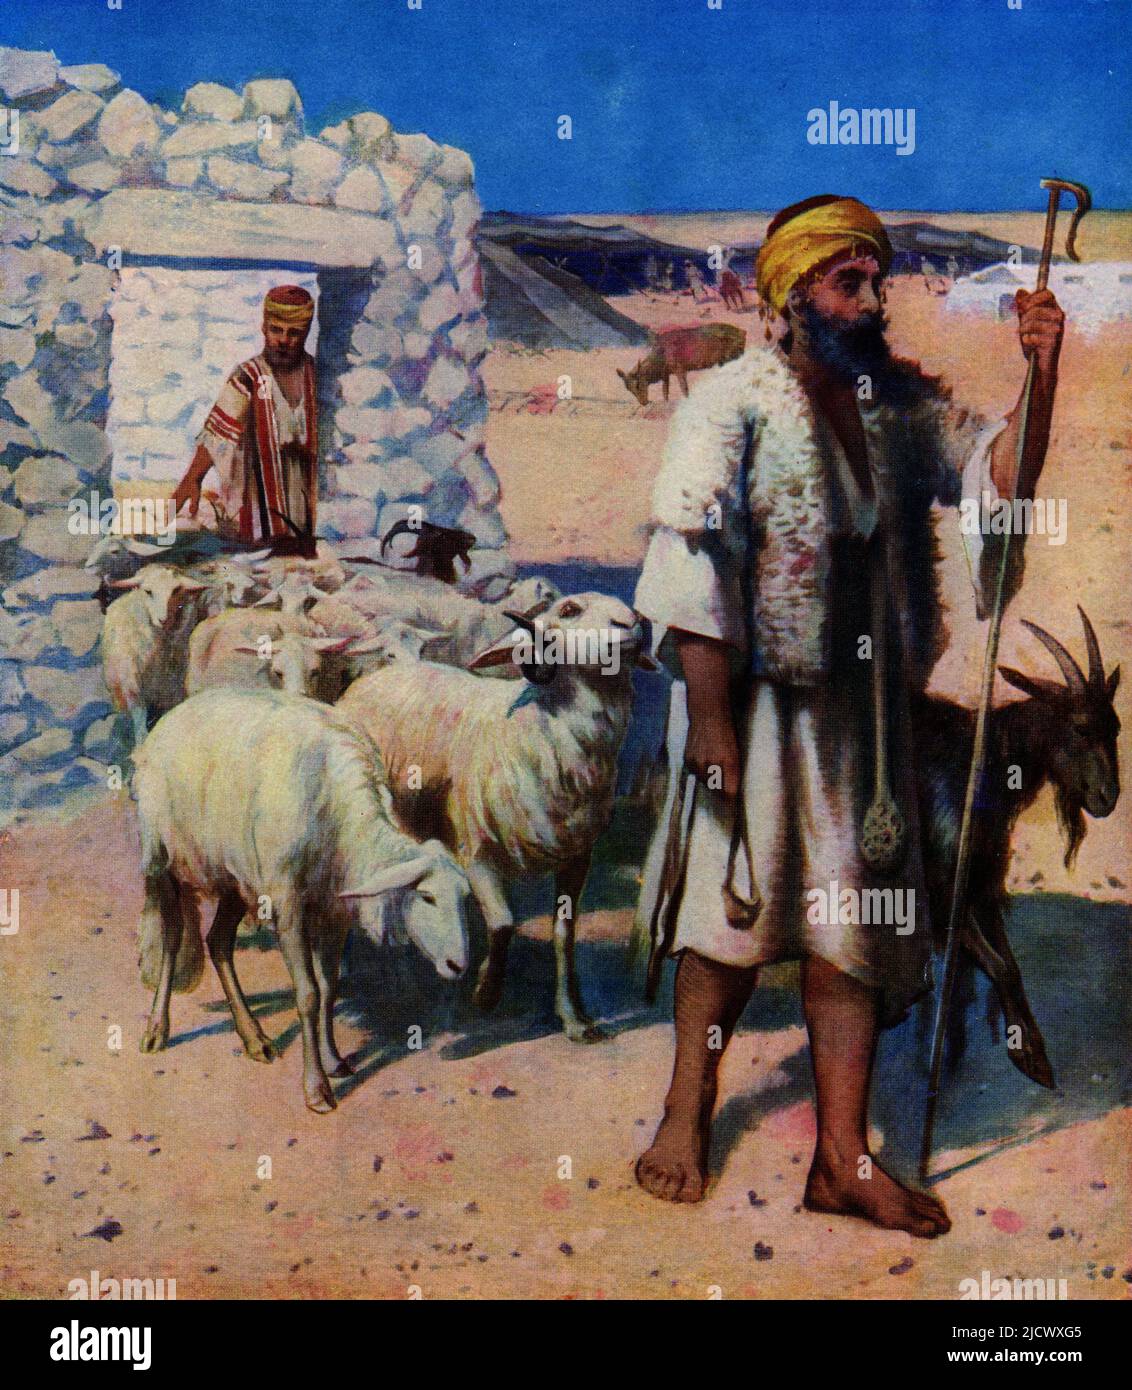 Illustrazione di un pastore mediorientale. La didascalia originale recita: Il pastore tiene la fionda autoctona fatta in casa nella sua mano destra, e il bastone o il crook nel suo feltro, mentre attaccato alla sua cintura è il randello di quercia o 'Rod', un formidabile mannapone, per proteggere il gregge da bestie selvatiche, bedaween, e briganti. Indossa il kamise bianco e sopra di esso il cappotto reversibile di pelle di pecora. Sono mostrati due capannoni, un campo di bedaween in lontananza, e una cotenna al centro, in piedi su un acquedotto coperto. Caricatore Quiver 1913. Foto Stock